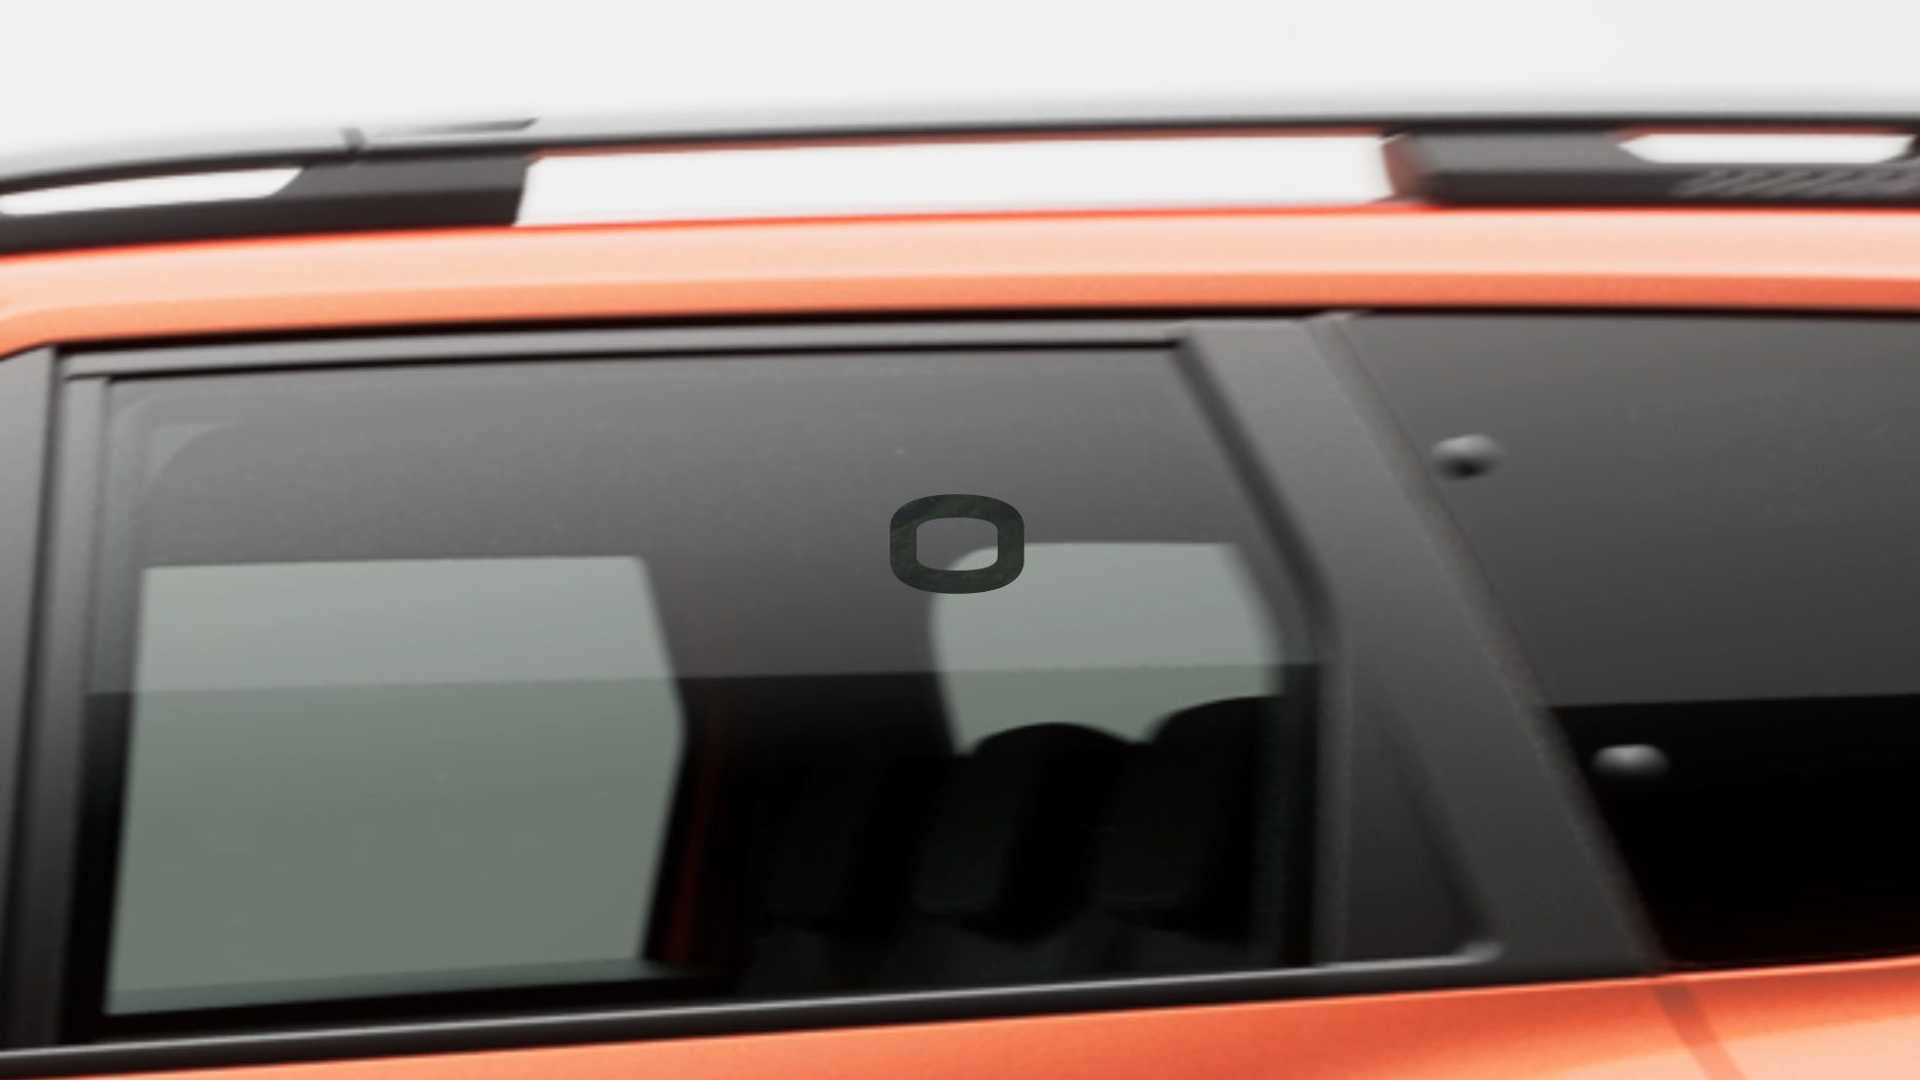 Dacia анонсировала новый универсал на базе Logan. Видео